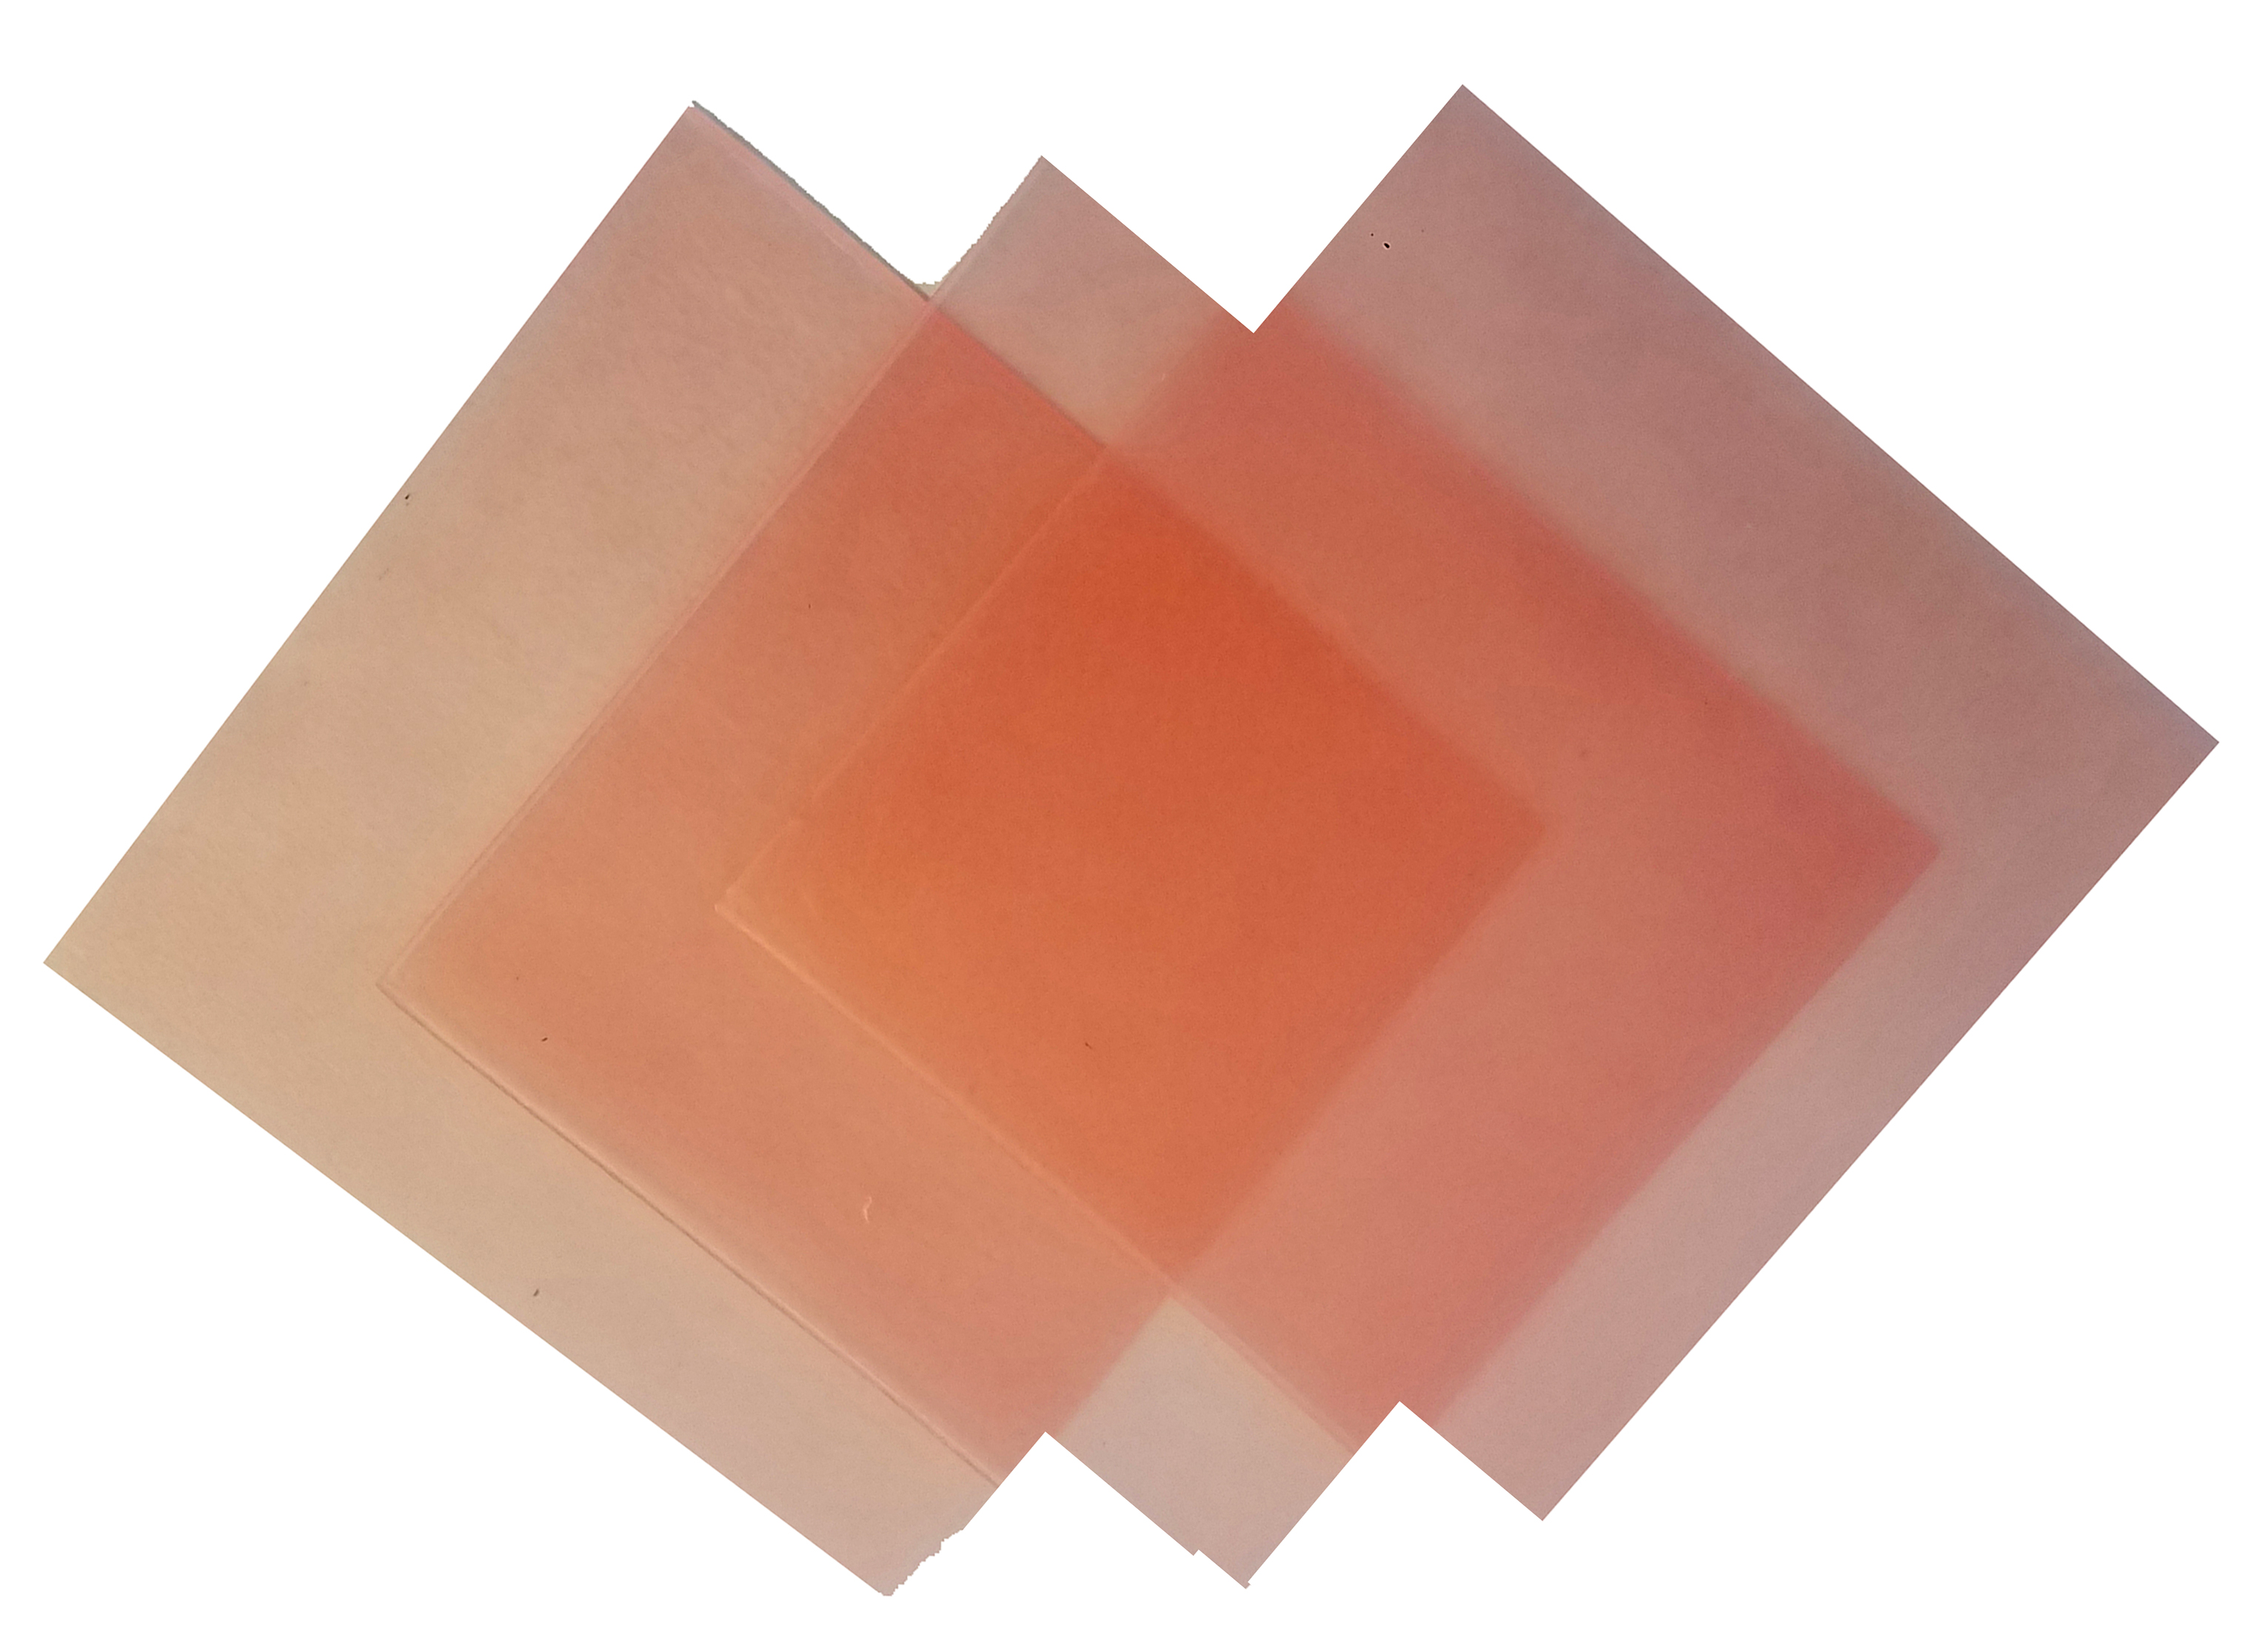 4\"x4\" sheet wax 20 gauge pink